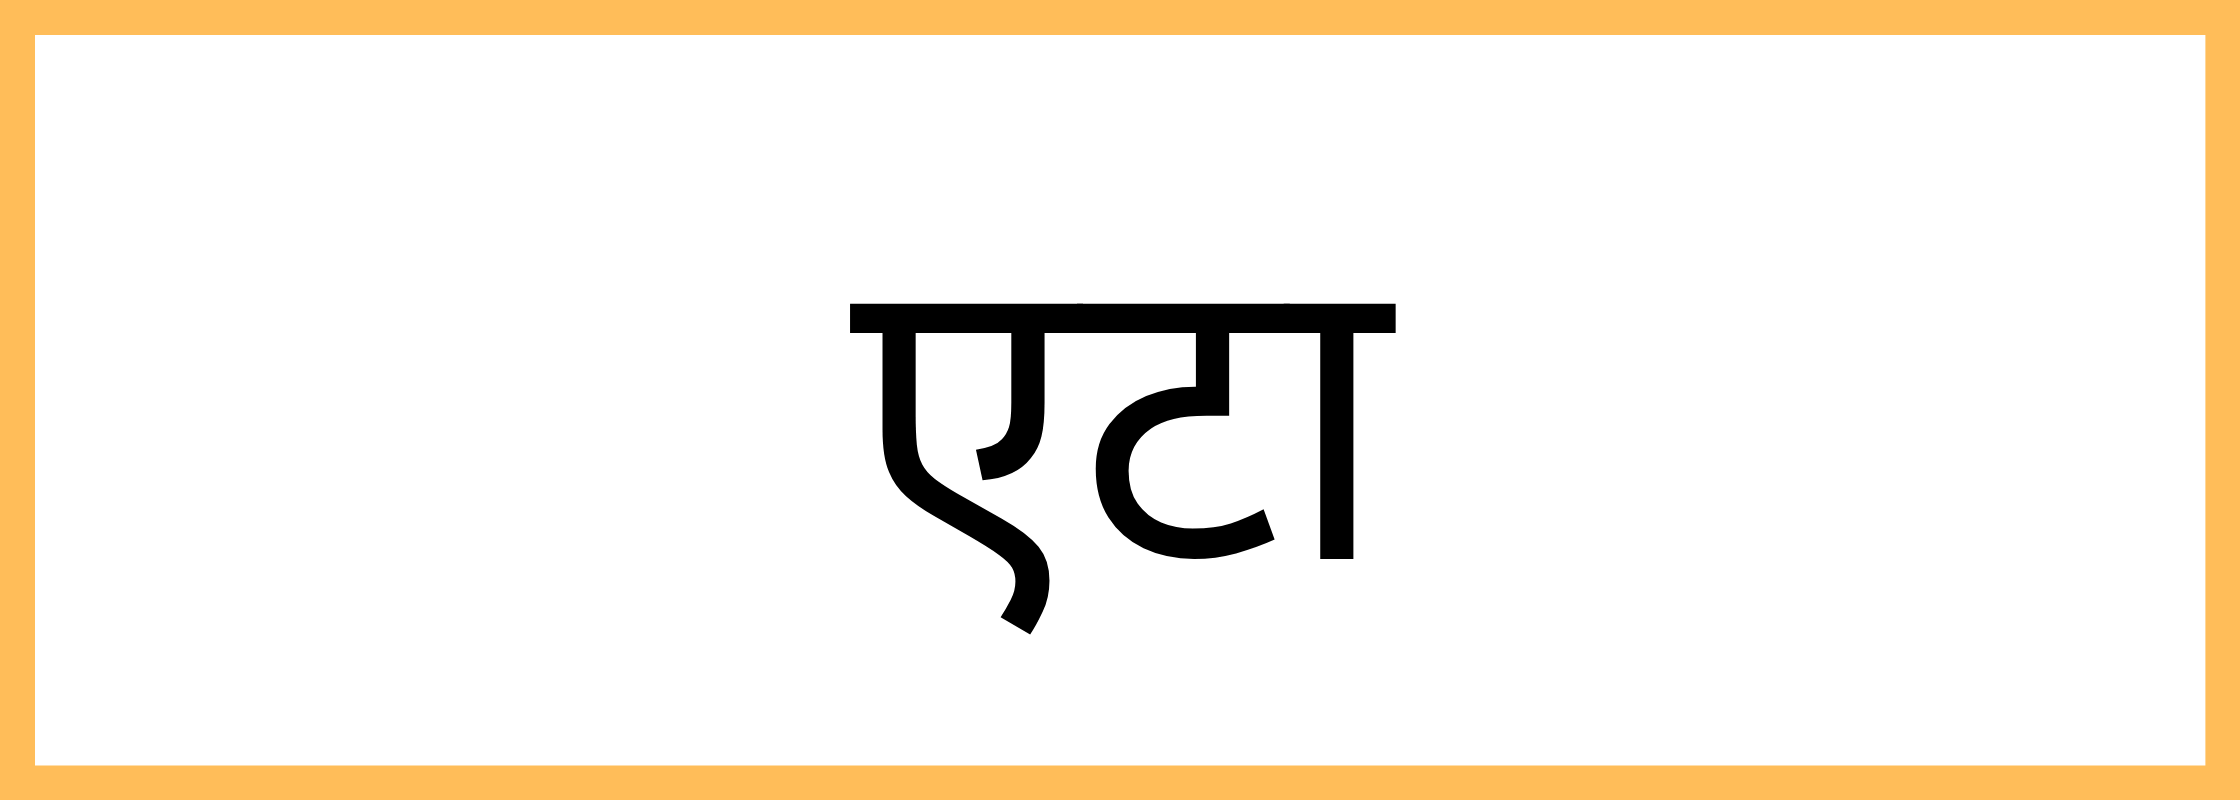 एटा-Etah-mandi-bhav